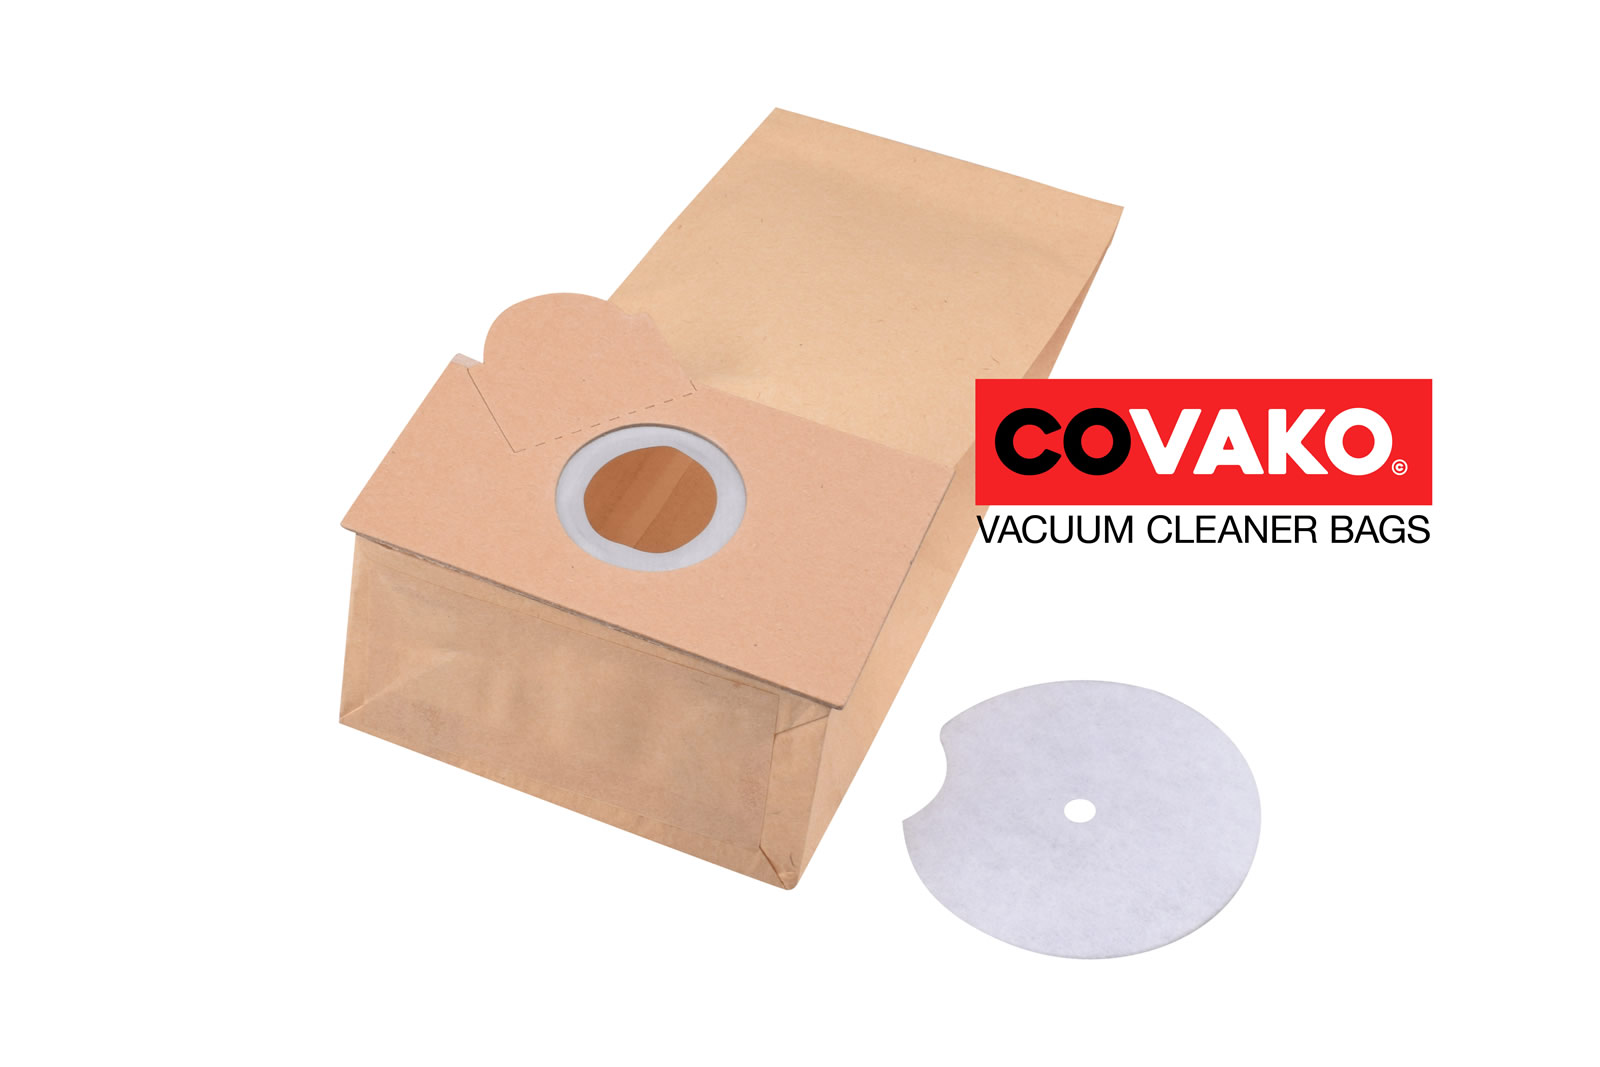 Fakir Combi 17-46 / Paper - Fakir vacuum cleaner bags